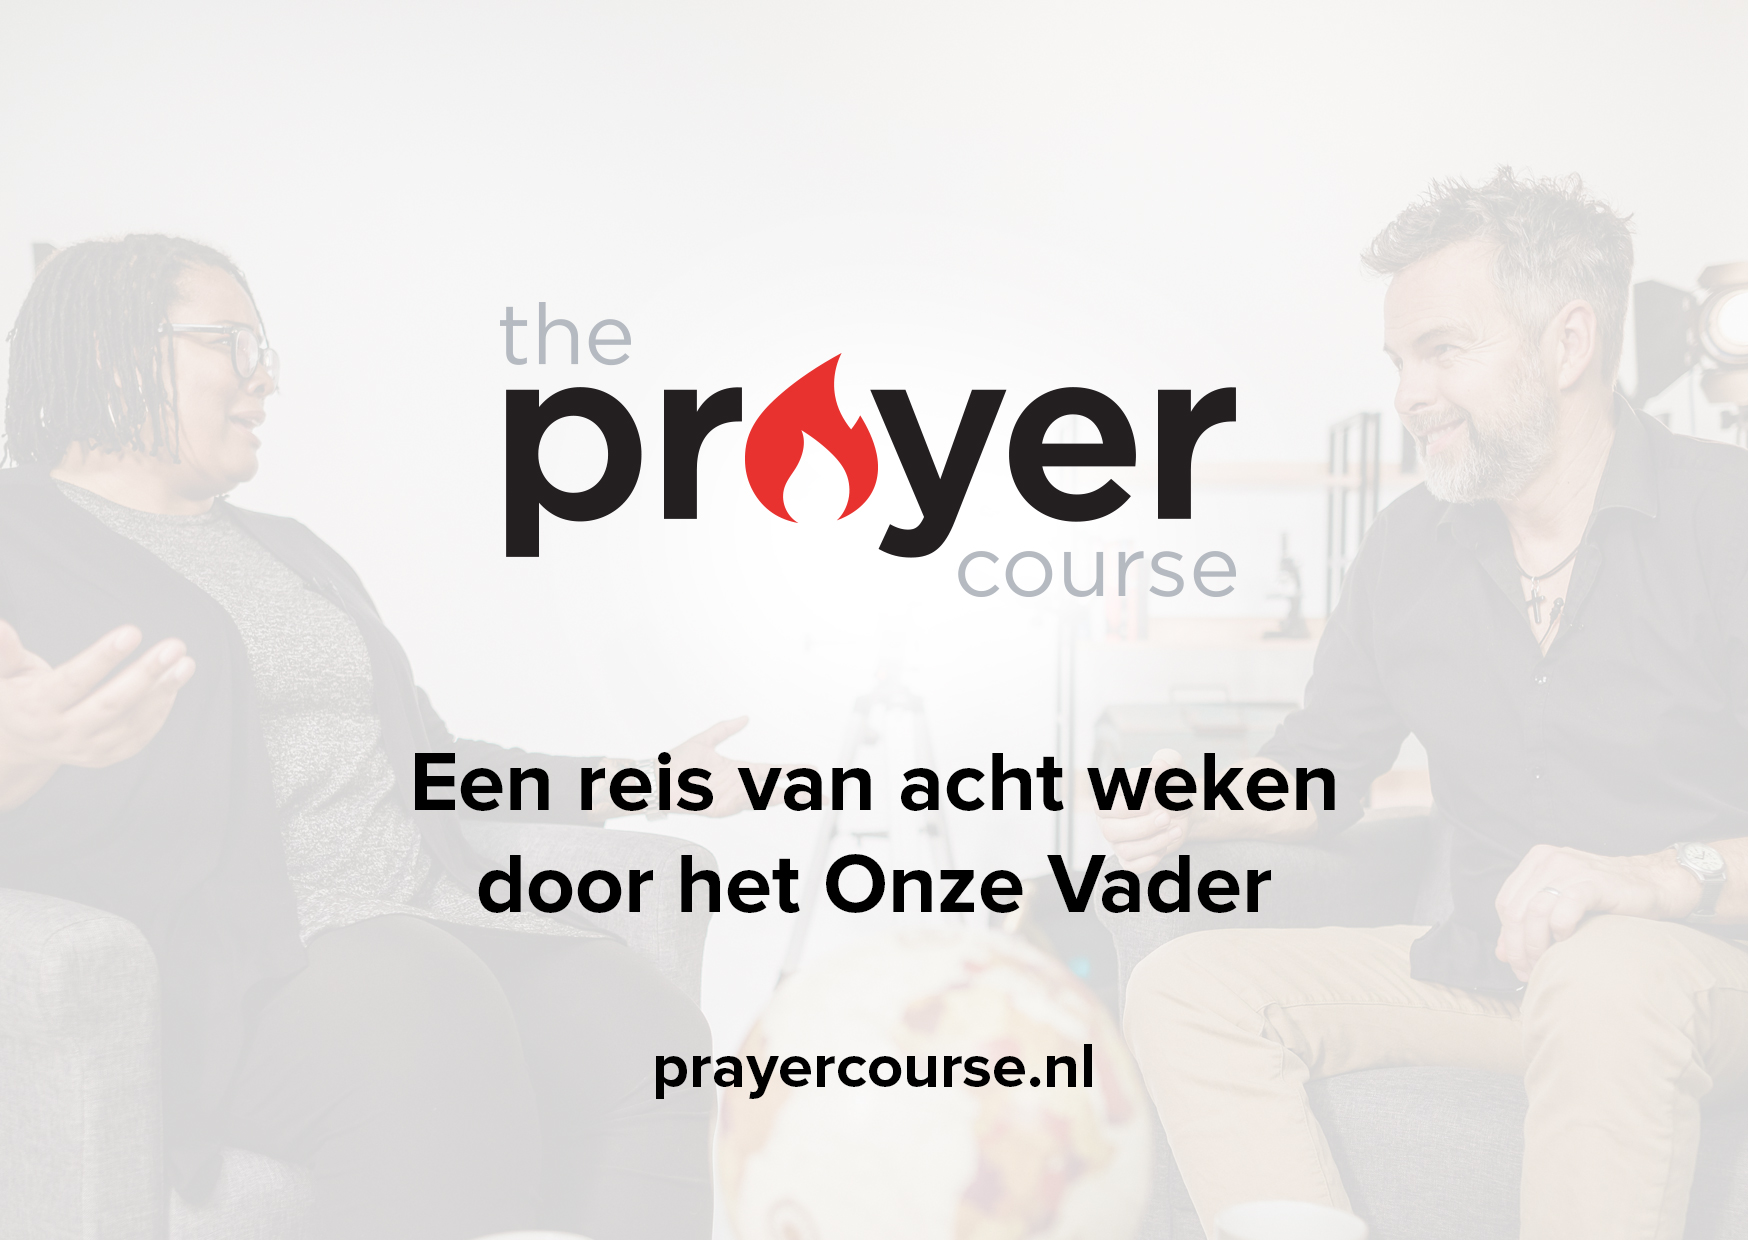 The Prayer Course